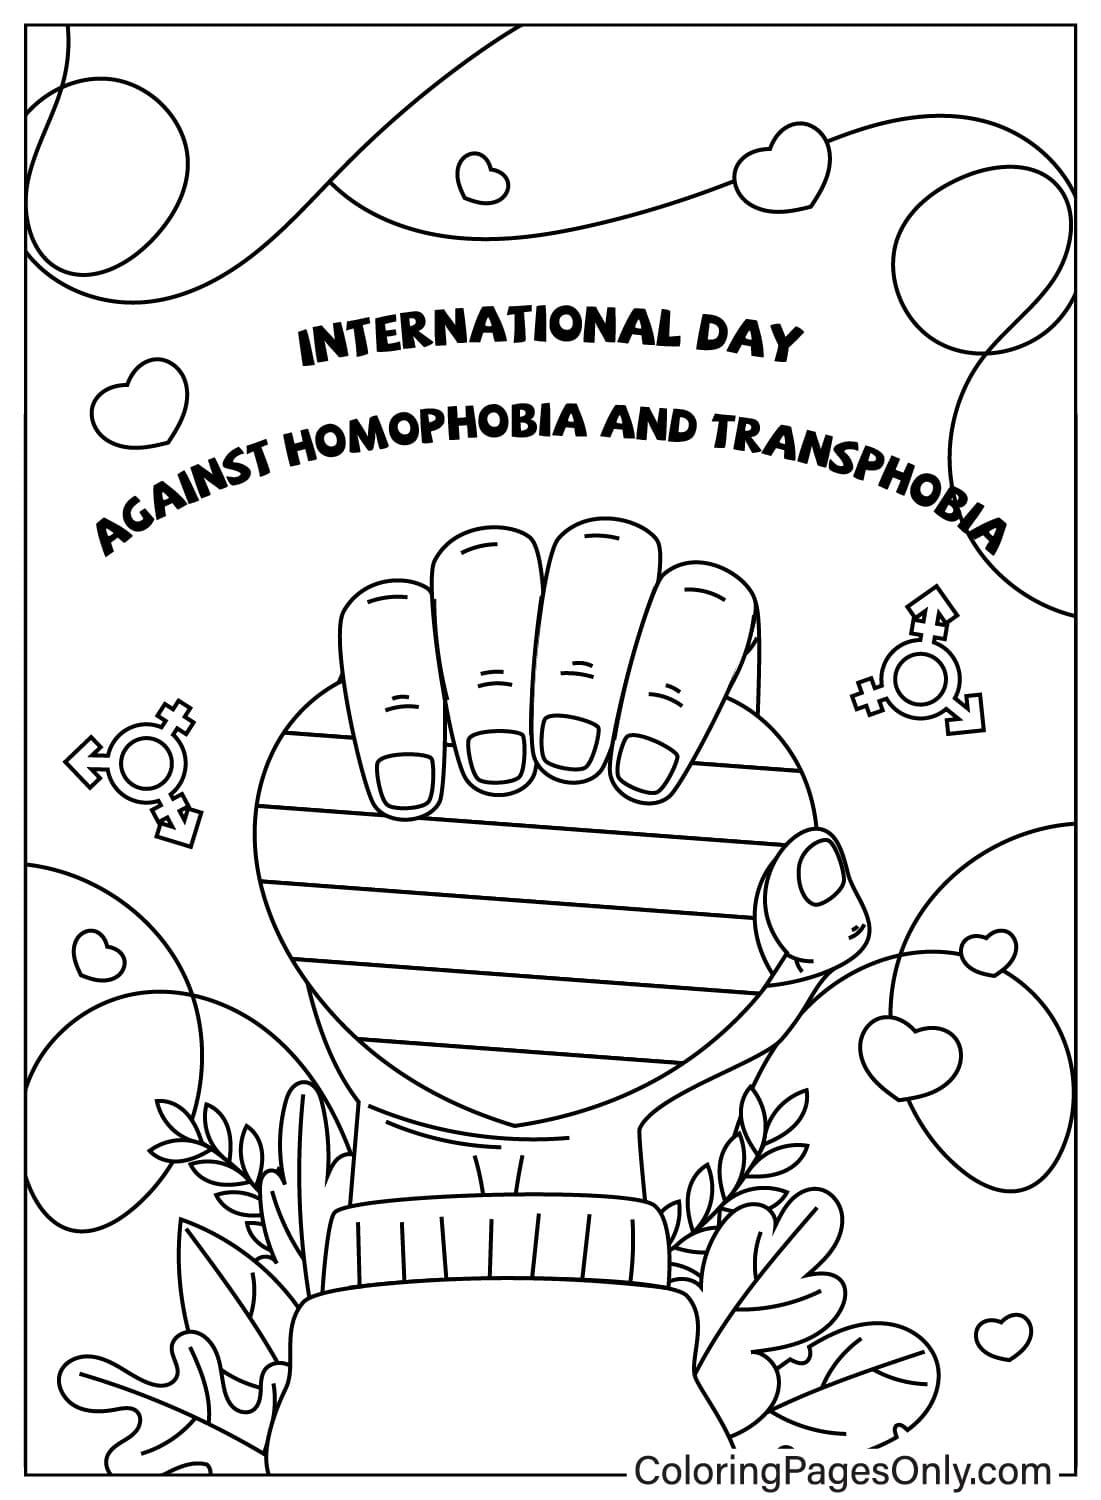 Página para colorir do Dia Internacional contra a Homofobia e a Transfobia de maio